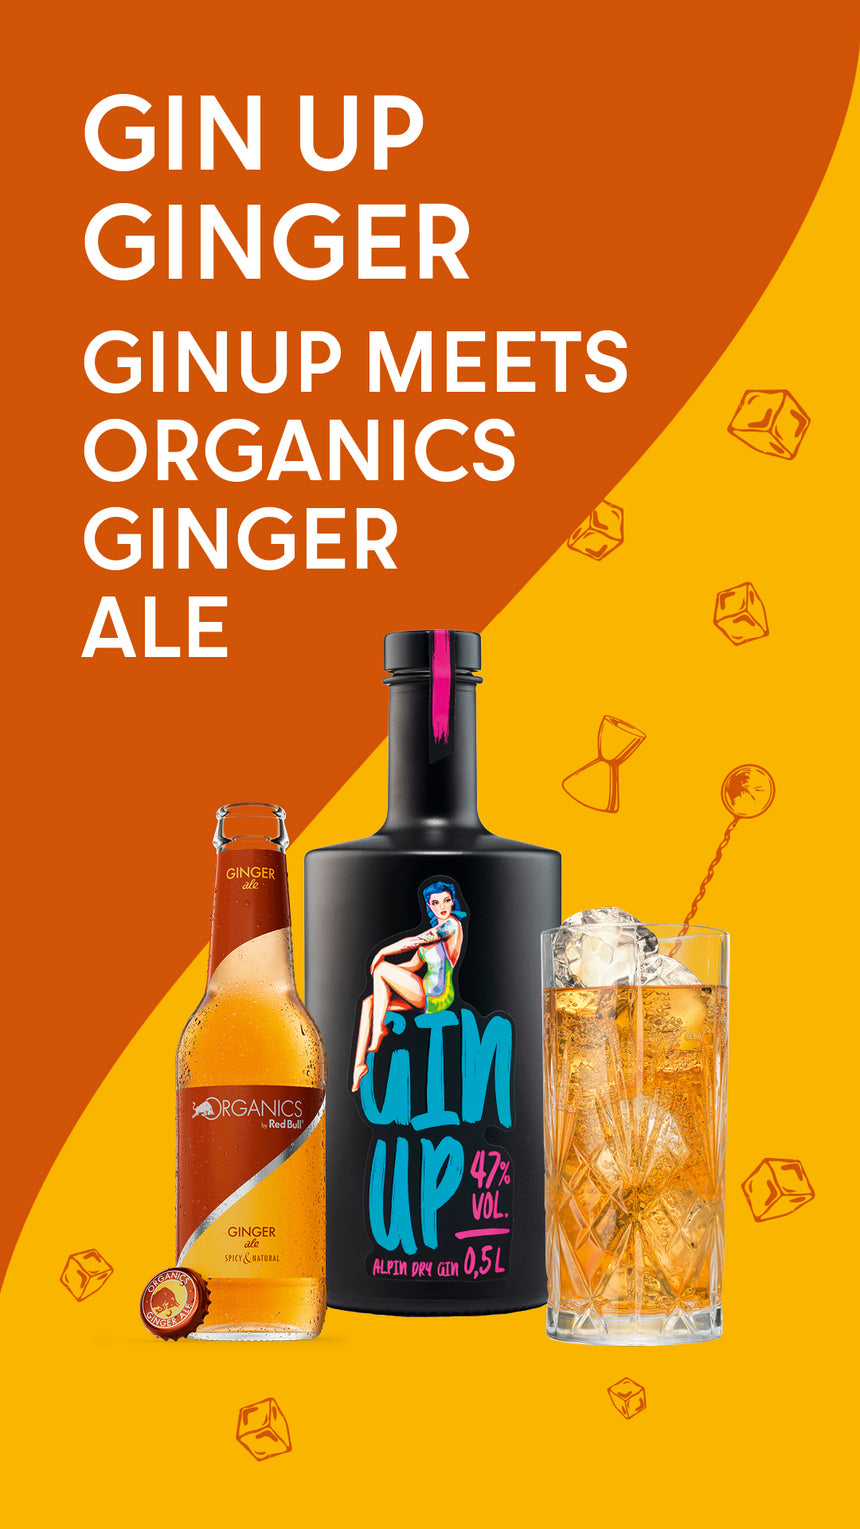 Organics Ginger Ale